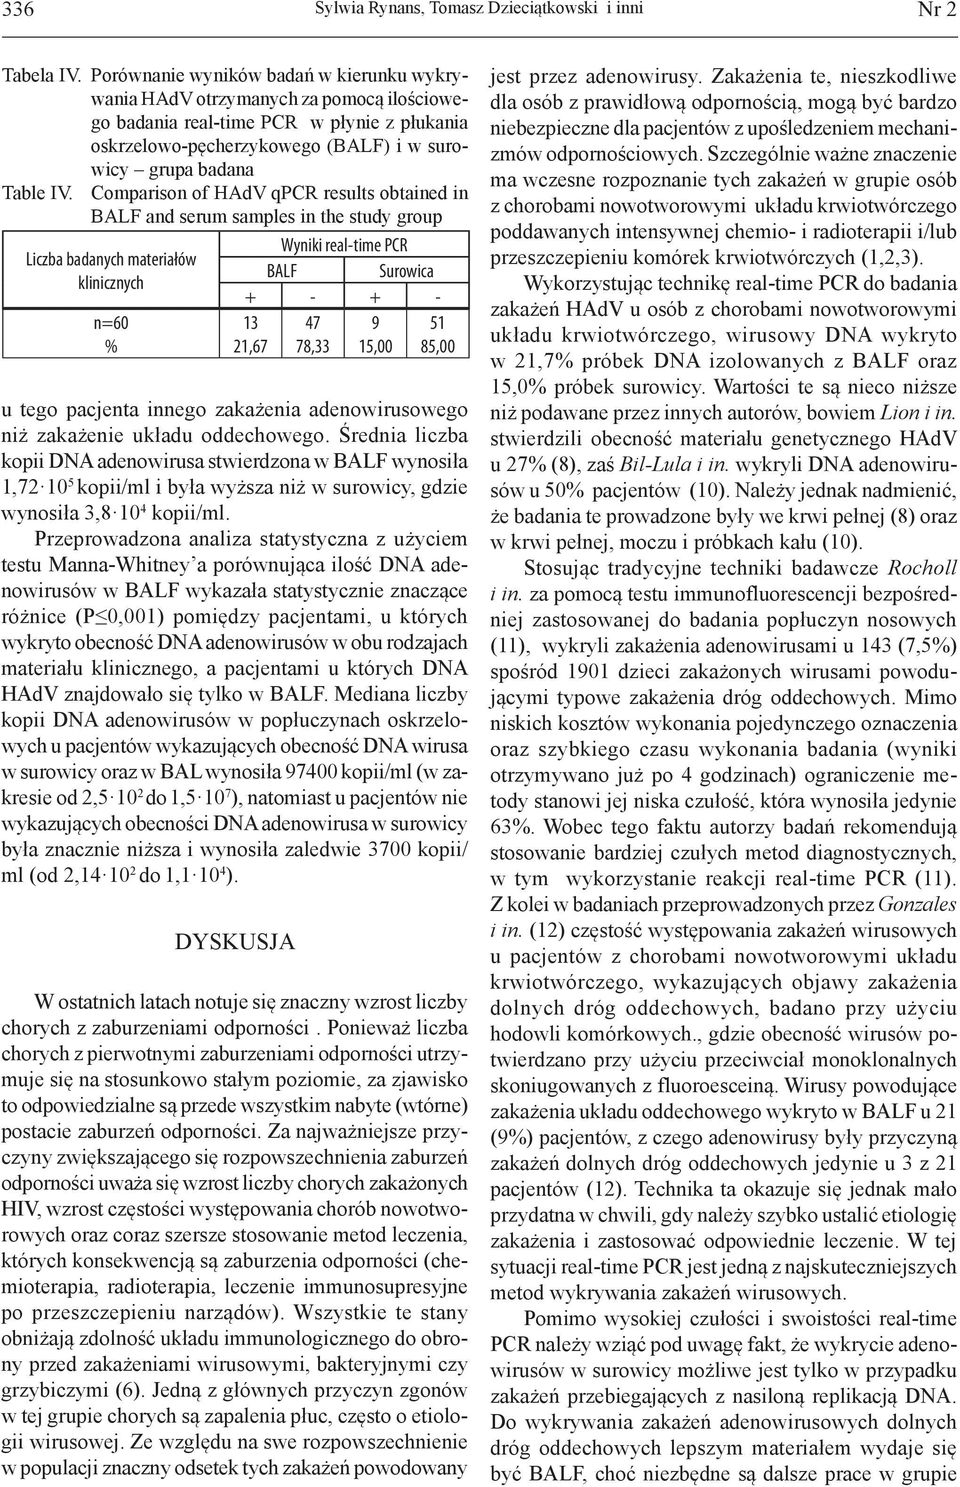 Comparison of HAdV qpcr results obtained in BALF and serum samples in the study group Liczba badanych materiałów klinicznych n=60 % u tego pacjenta innego zakażenia adenowirusowego niż zakażenie